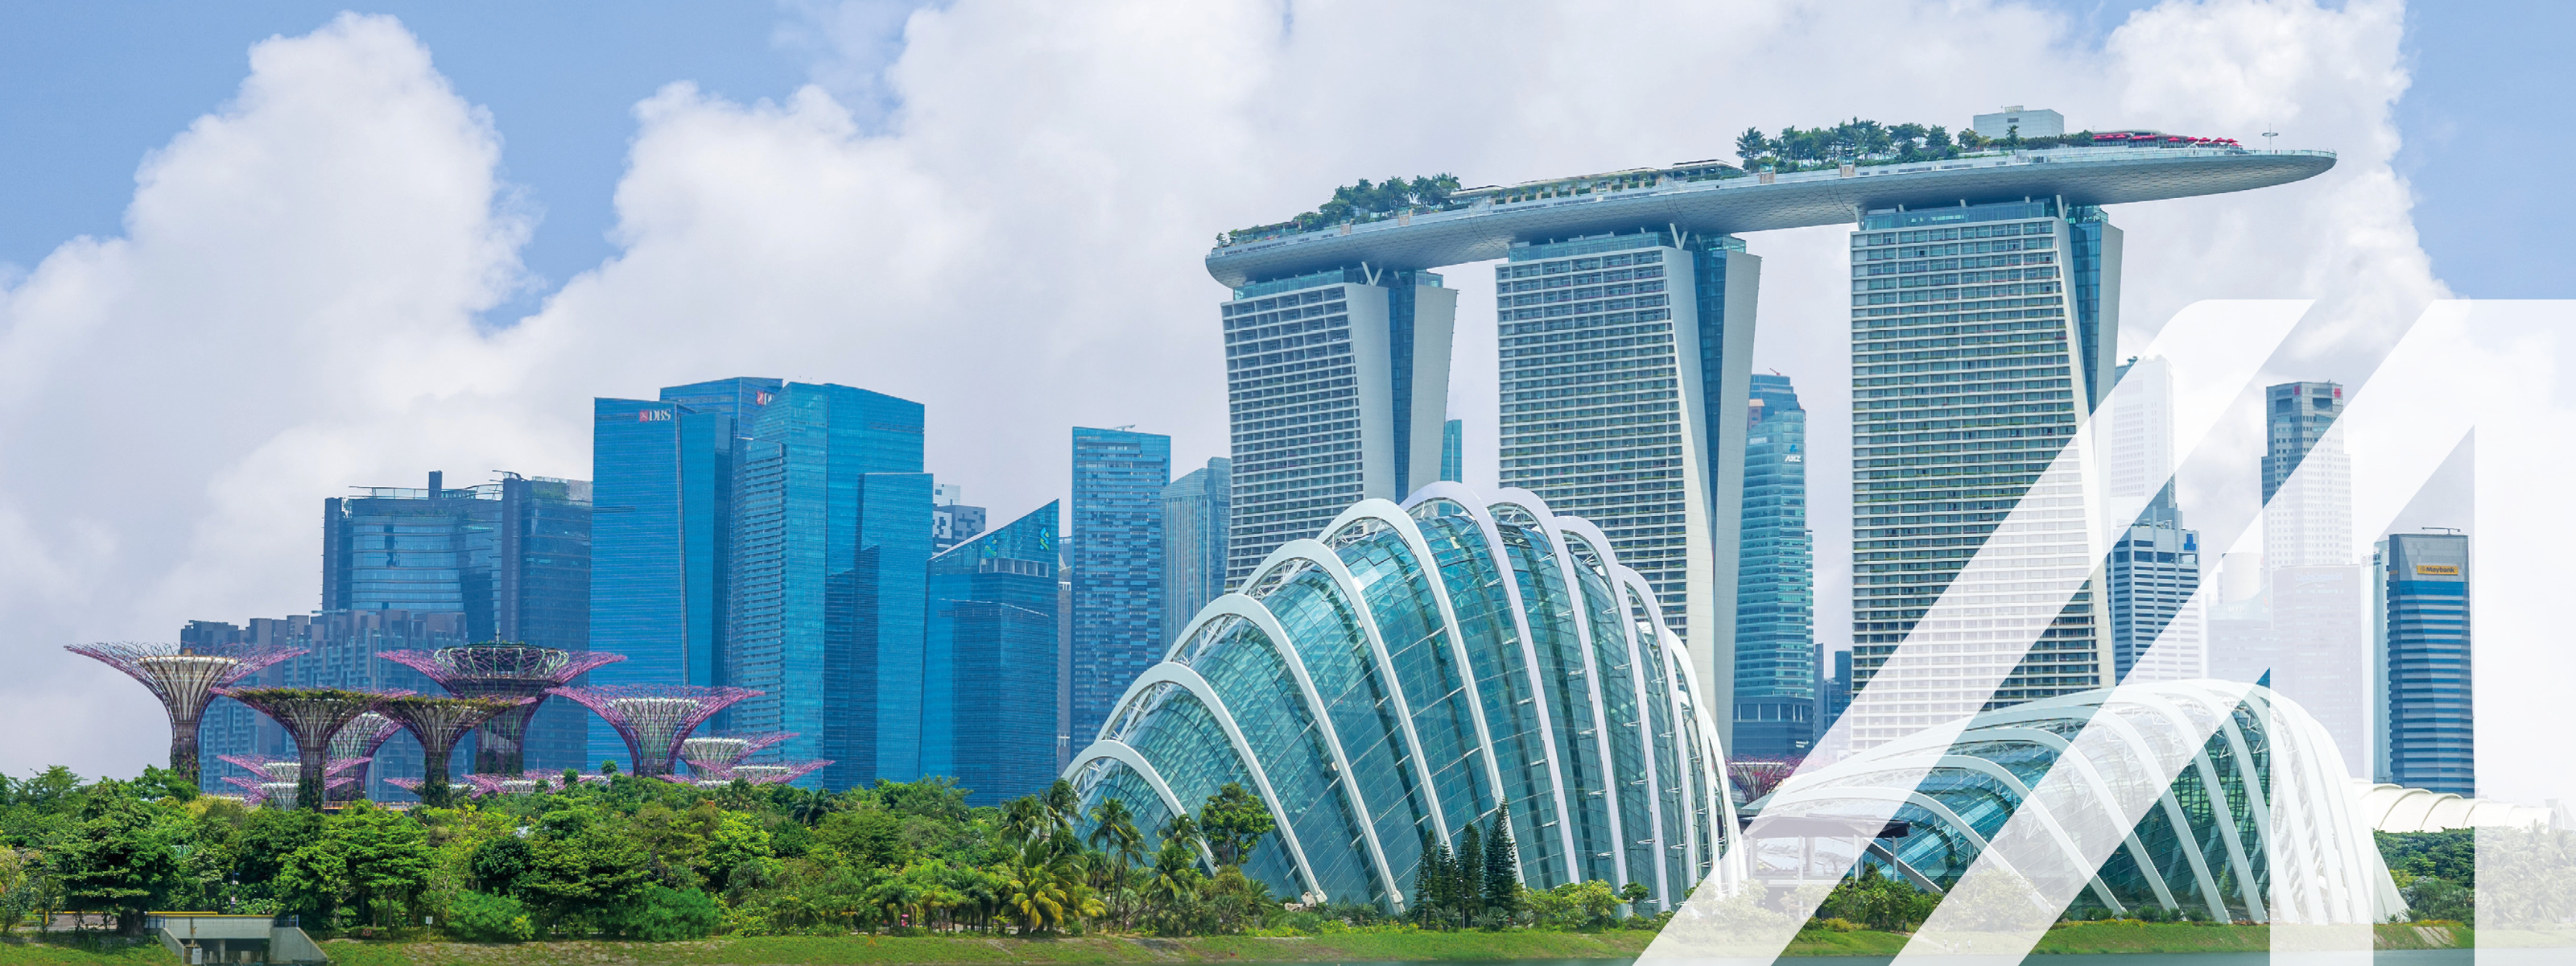 Stadtansicht von Singapur: Skyline in der Marina Bay mit modernen Hochhäusern und fantasievollen Bäumen unter blauem Himmel. Über das Bild wurde ein weißes Austria A gelegt.
